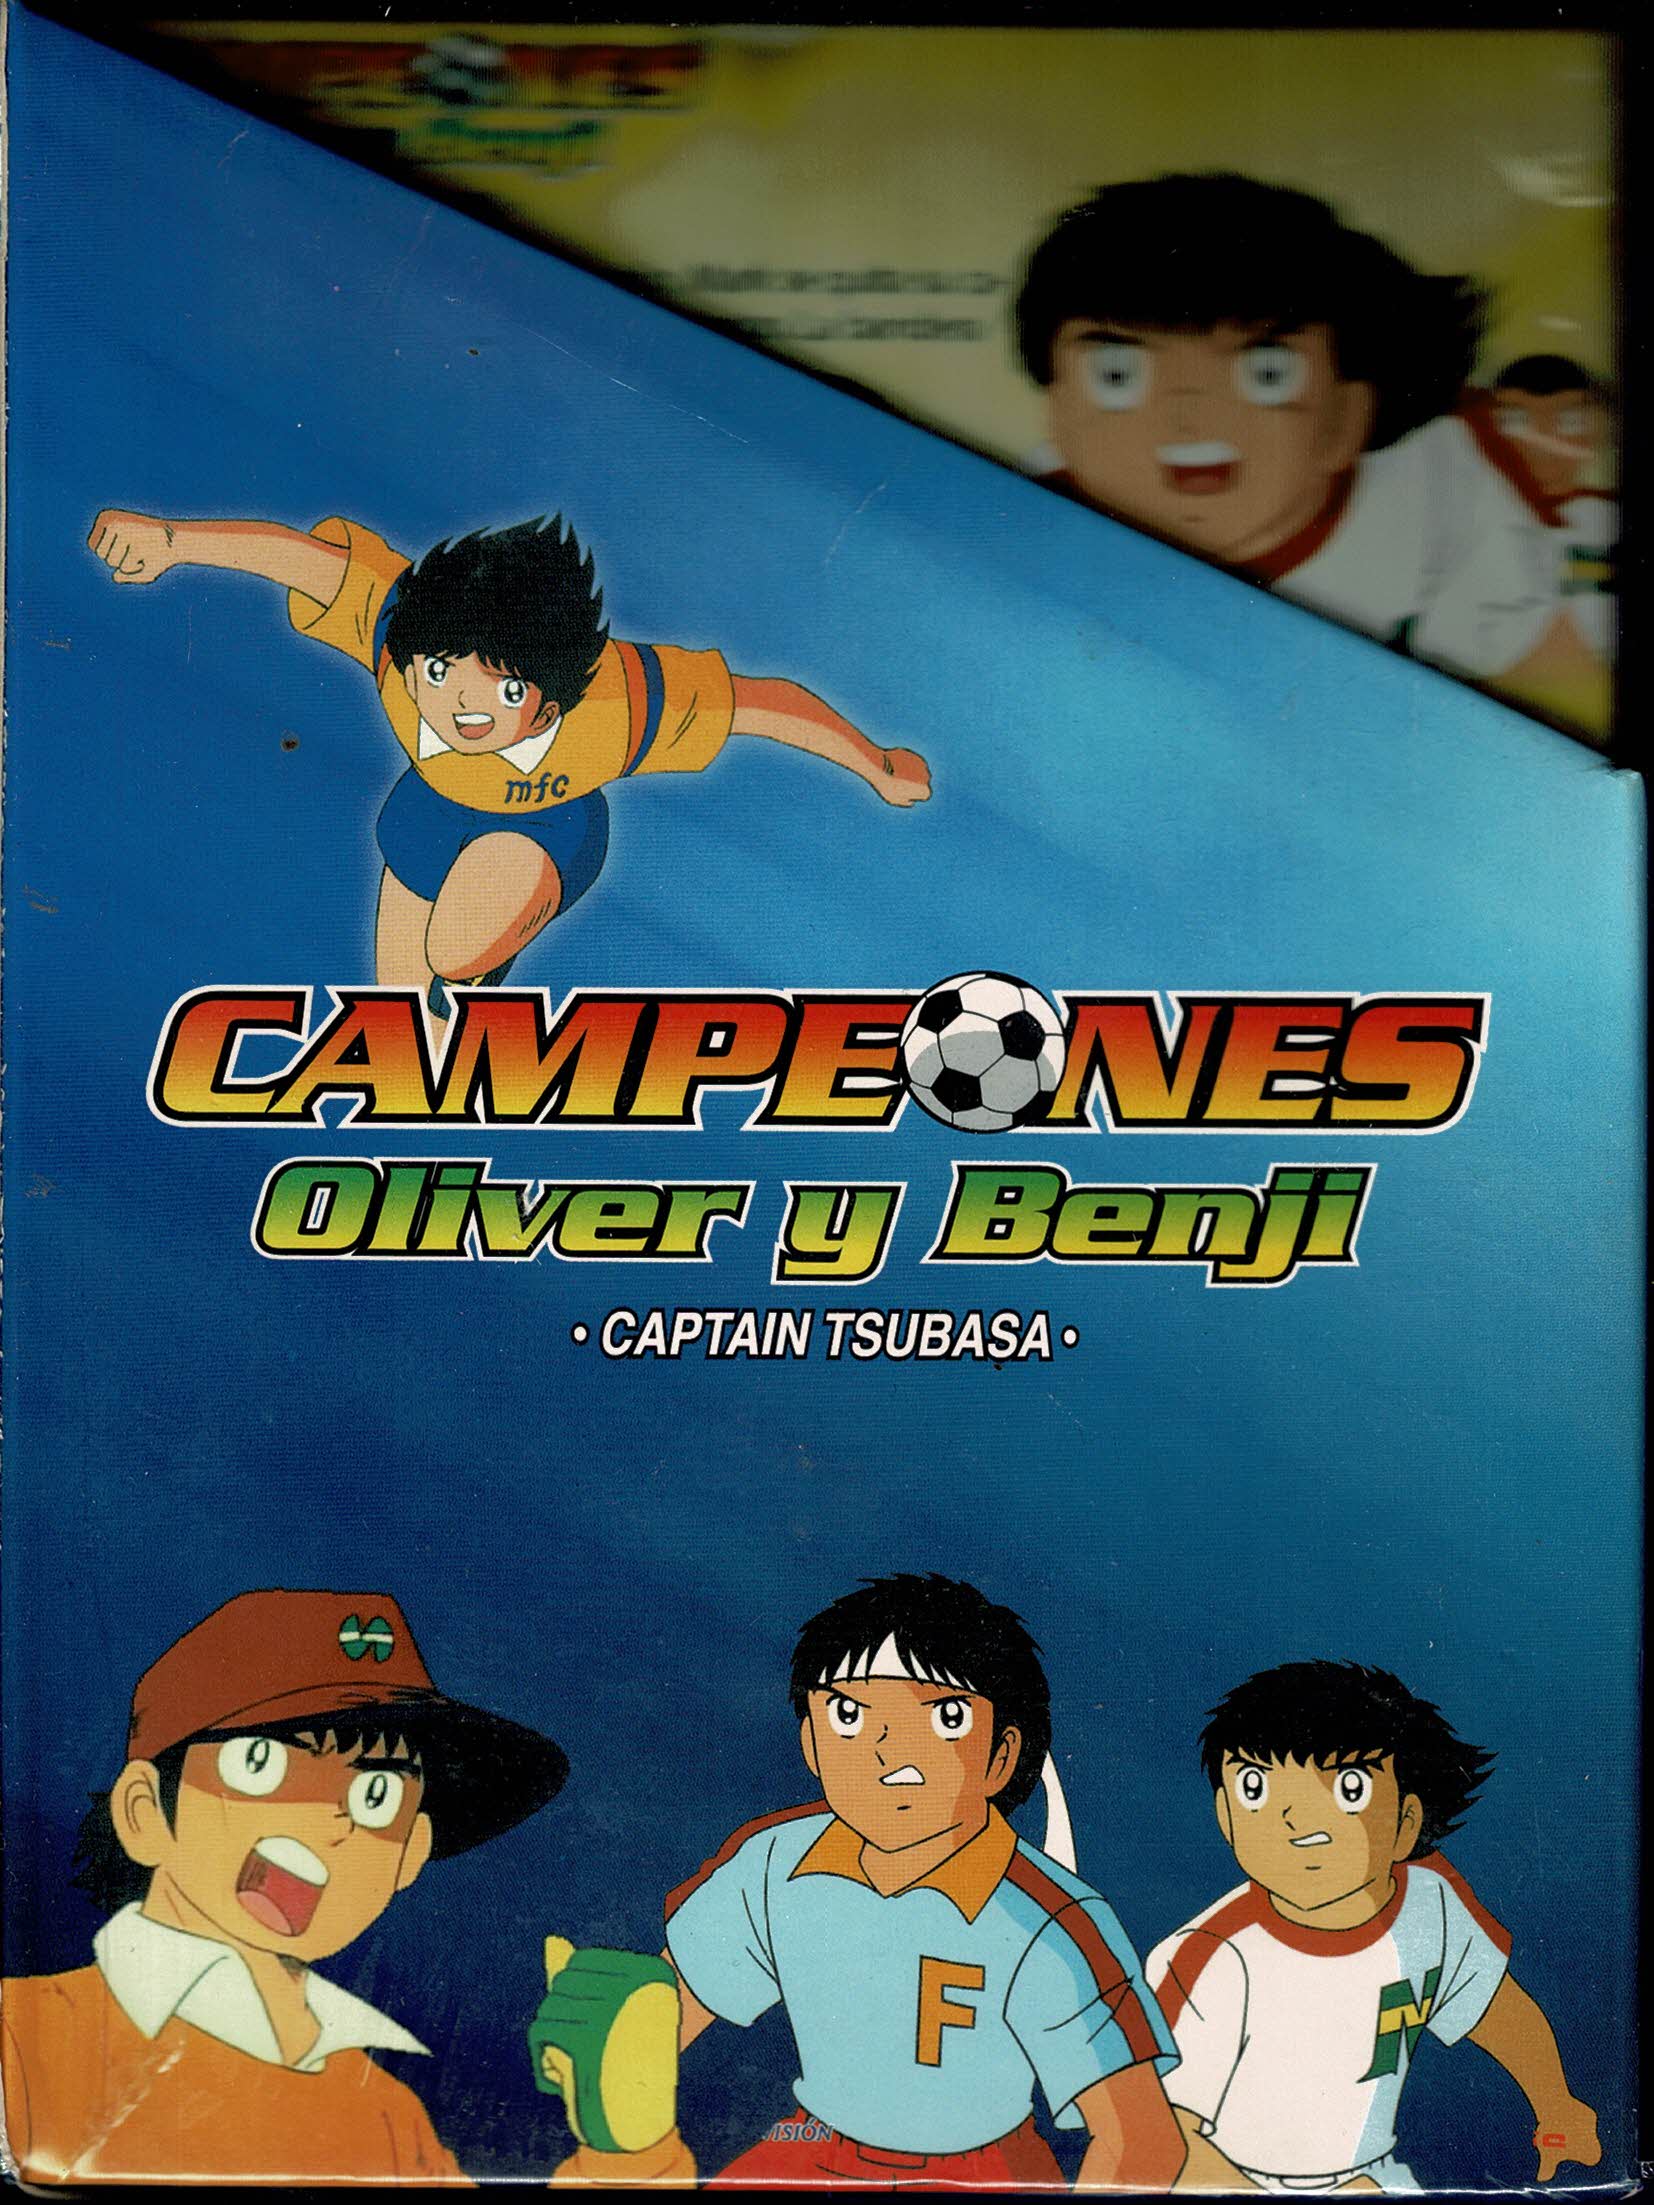 Campeones Oliver y Benji *captain tsubasa* Pack de 32 dvd